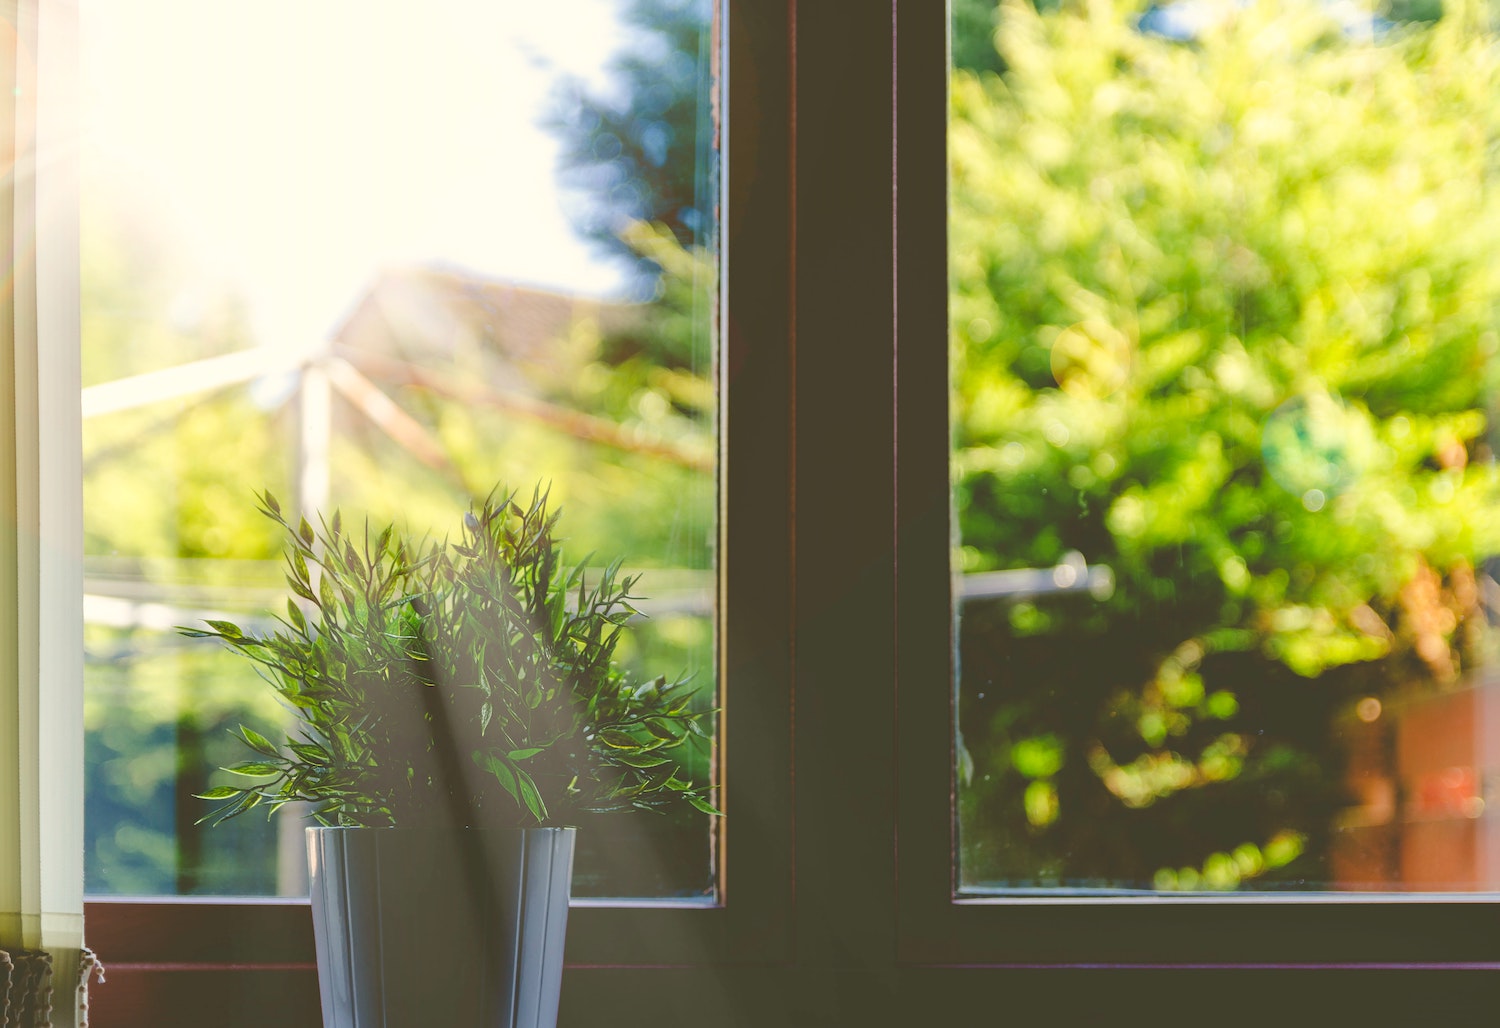 plant at window